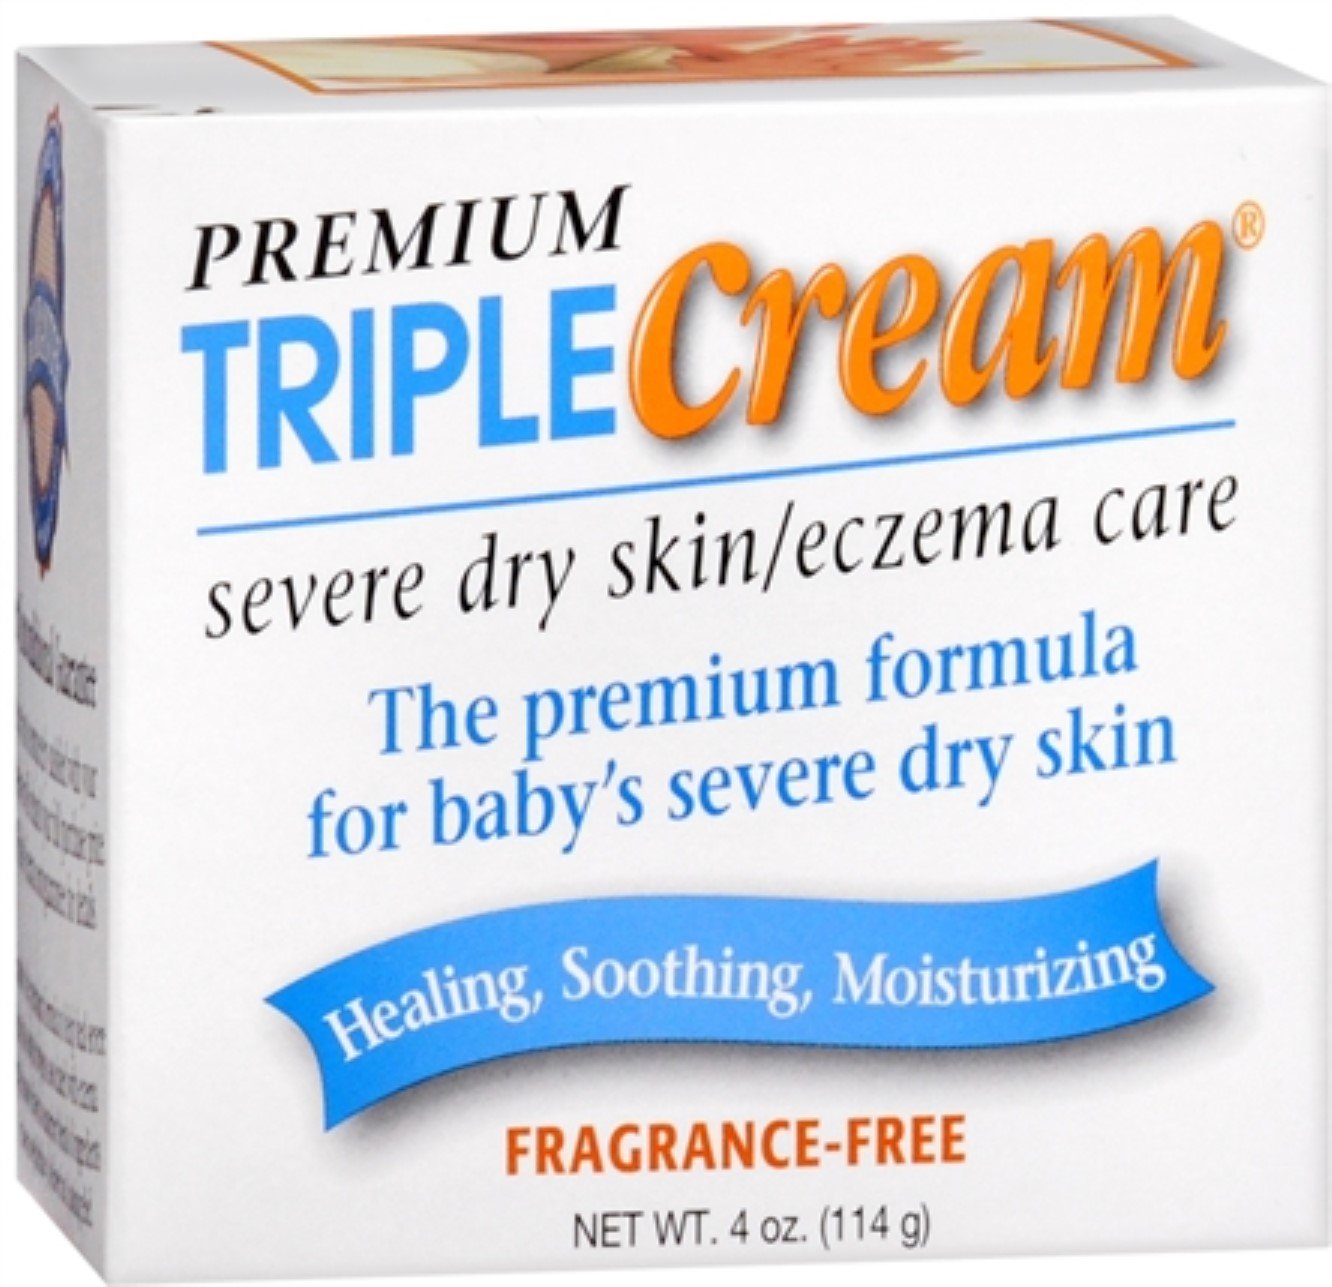 Premium Triple Cream Severe Dry Skin/Eczema Care 4 oz ...